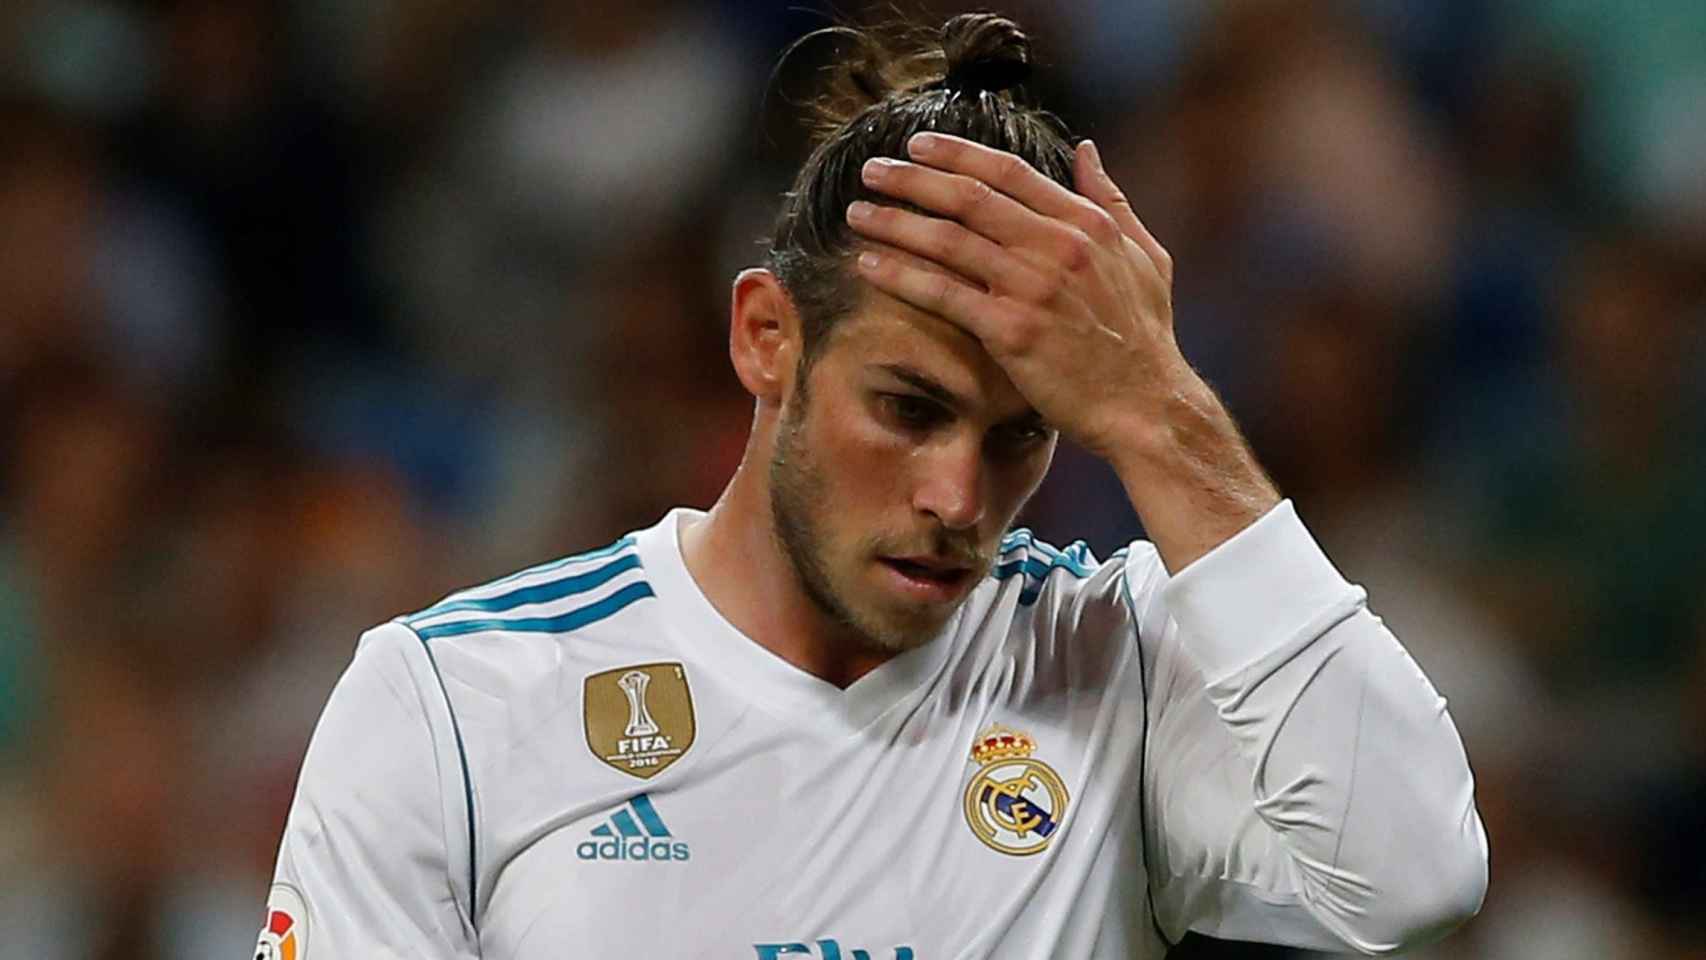 Los pasatiempos de Bale vuelven a meter en apuros al Madrid